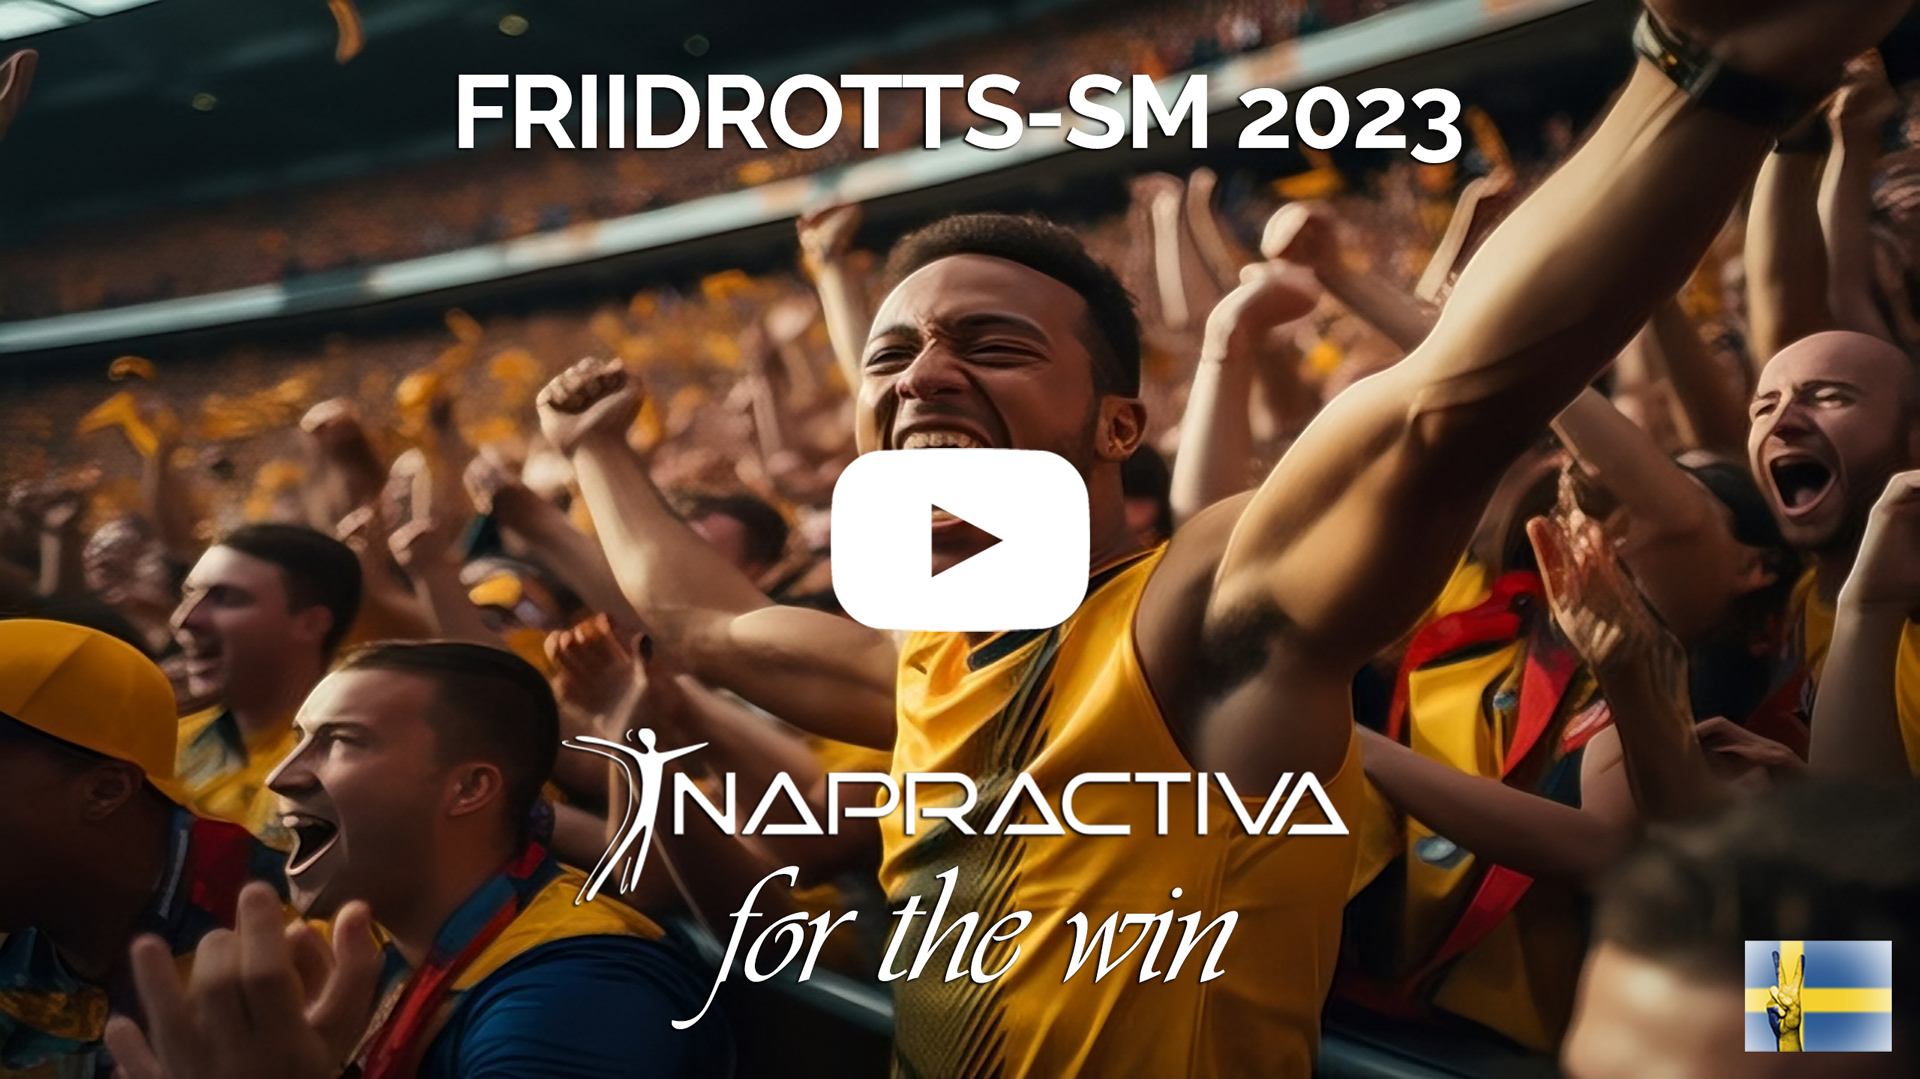 Se vår Julian och Napractiva vinna 100m sprint på Friidrotts-SM 2023 - Play